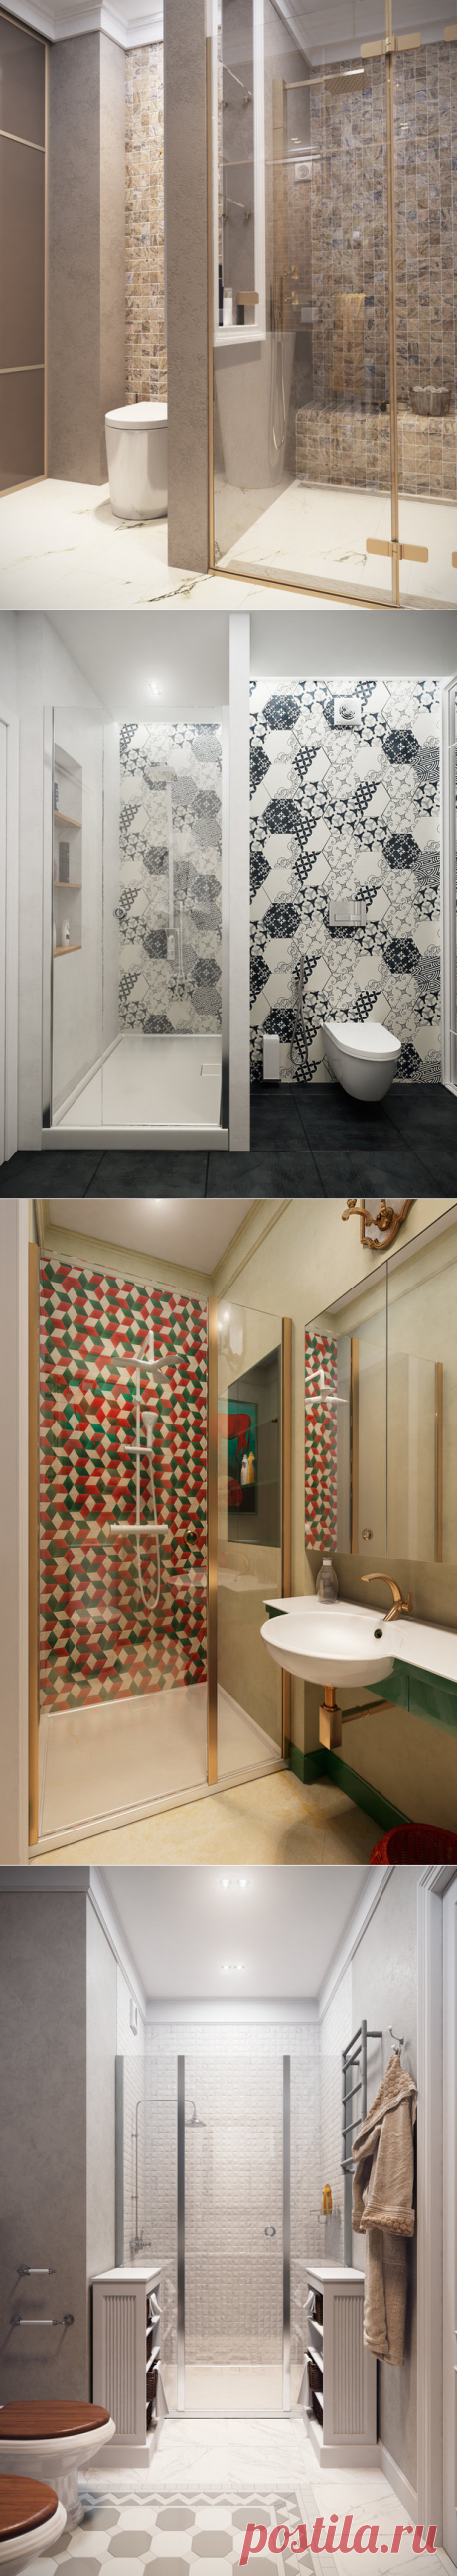 Делаем душ в небольшом санузле: советы + пример | Свежие идеи дизайна интерьеров, декора, архитектуры на INMYROOM